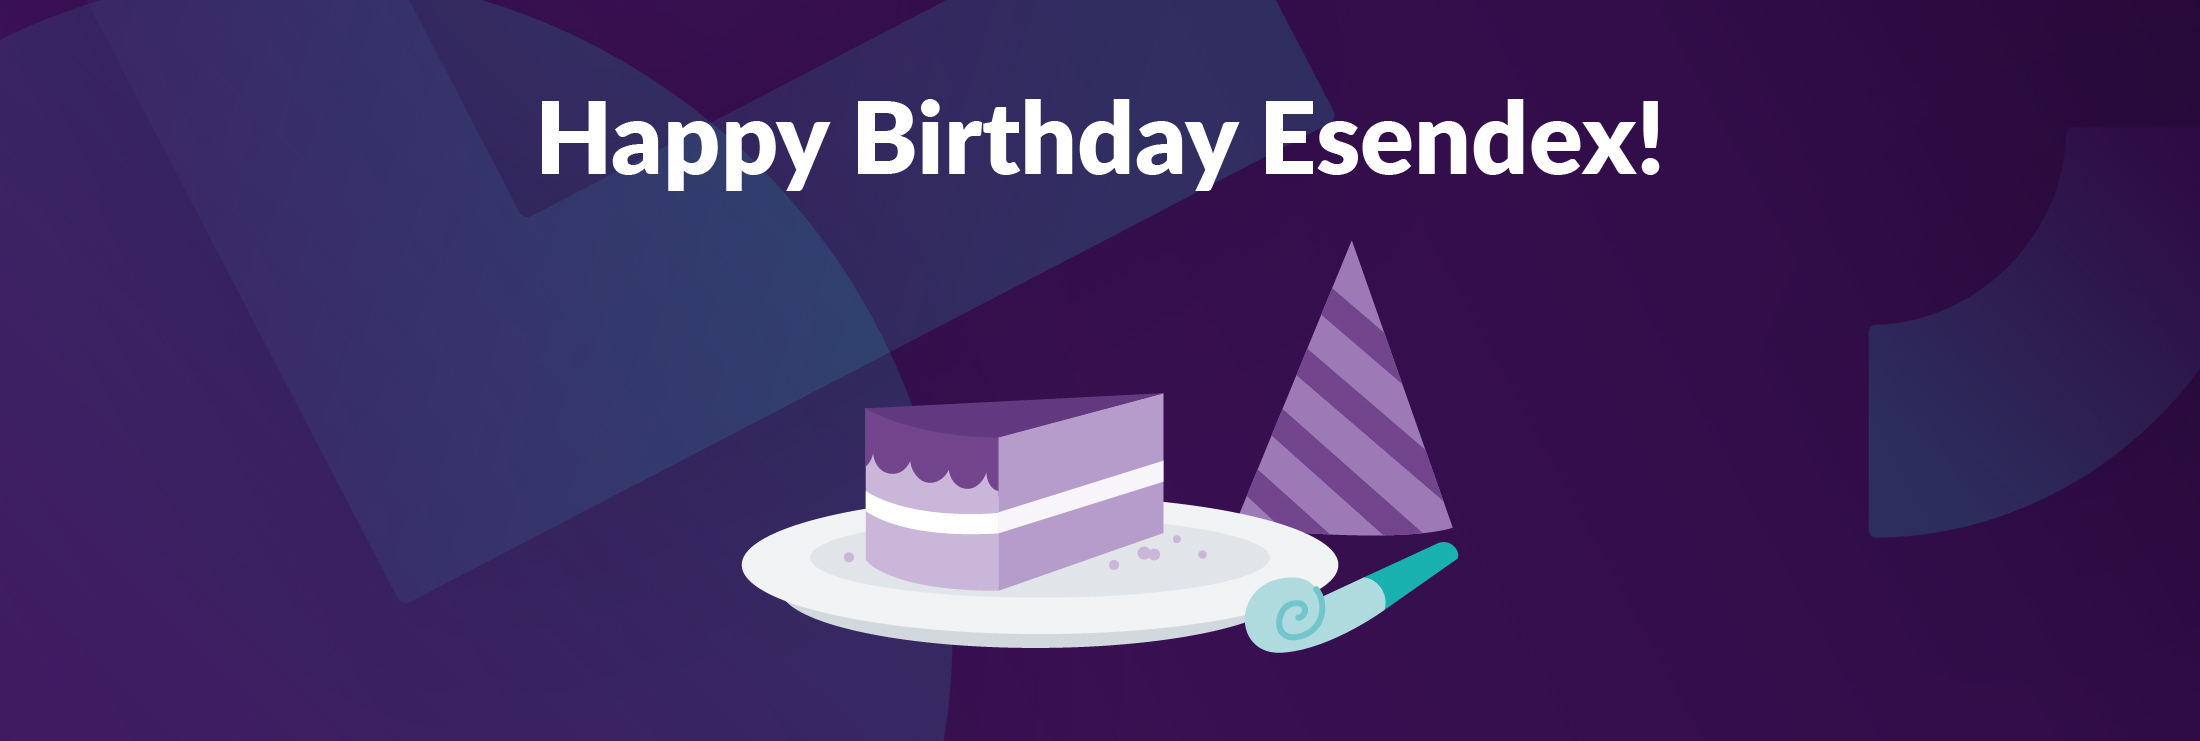 Happy birthday Esendex illustration